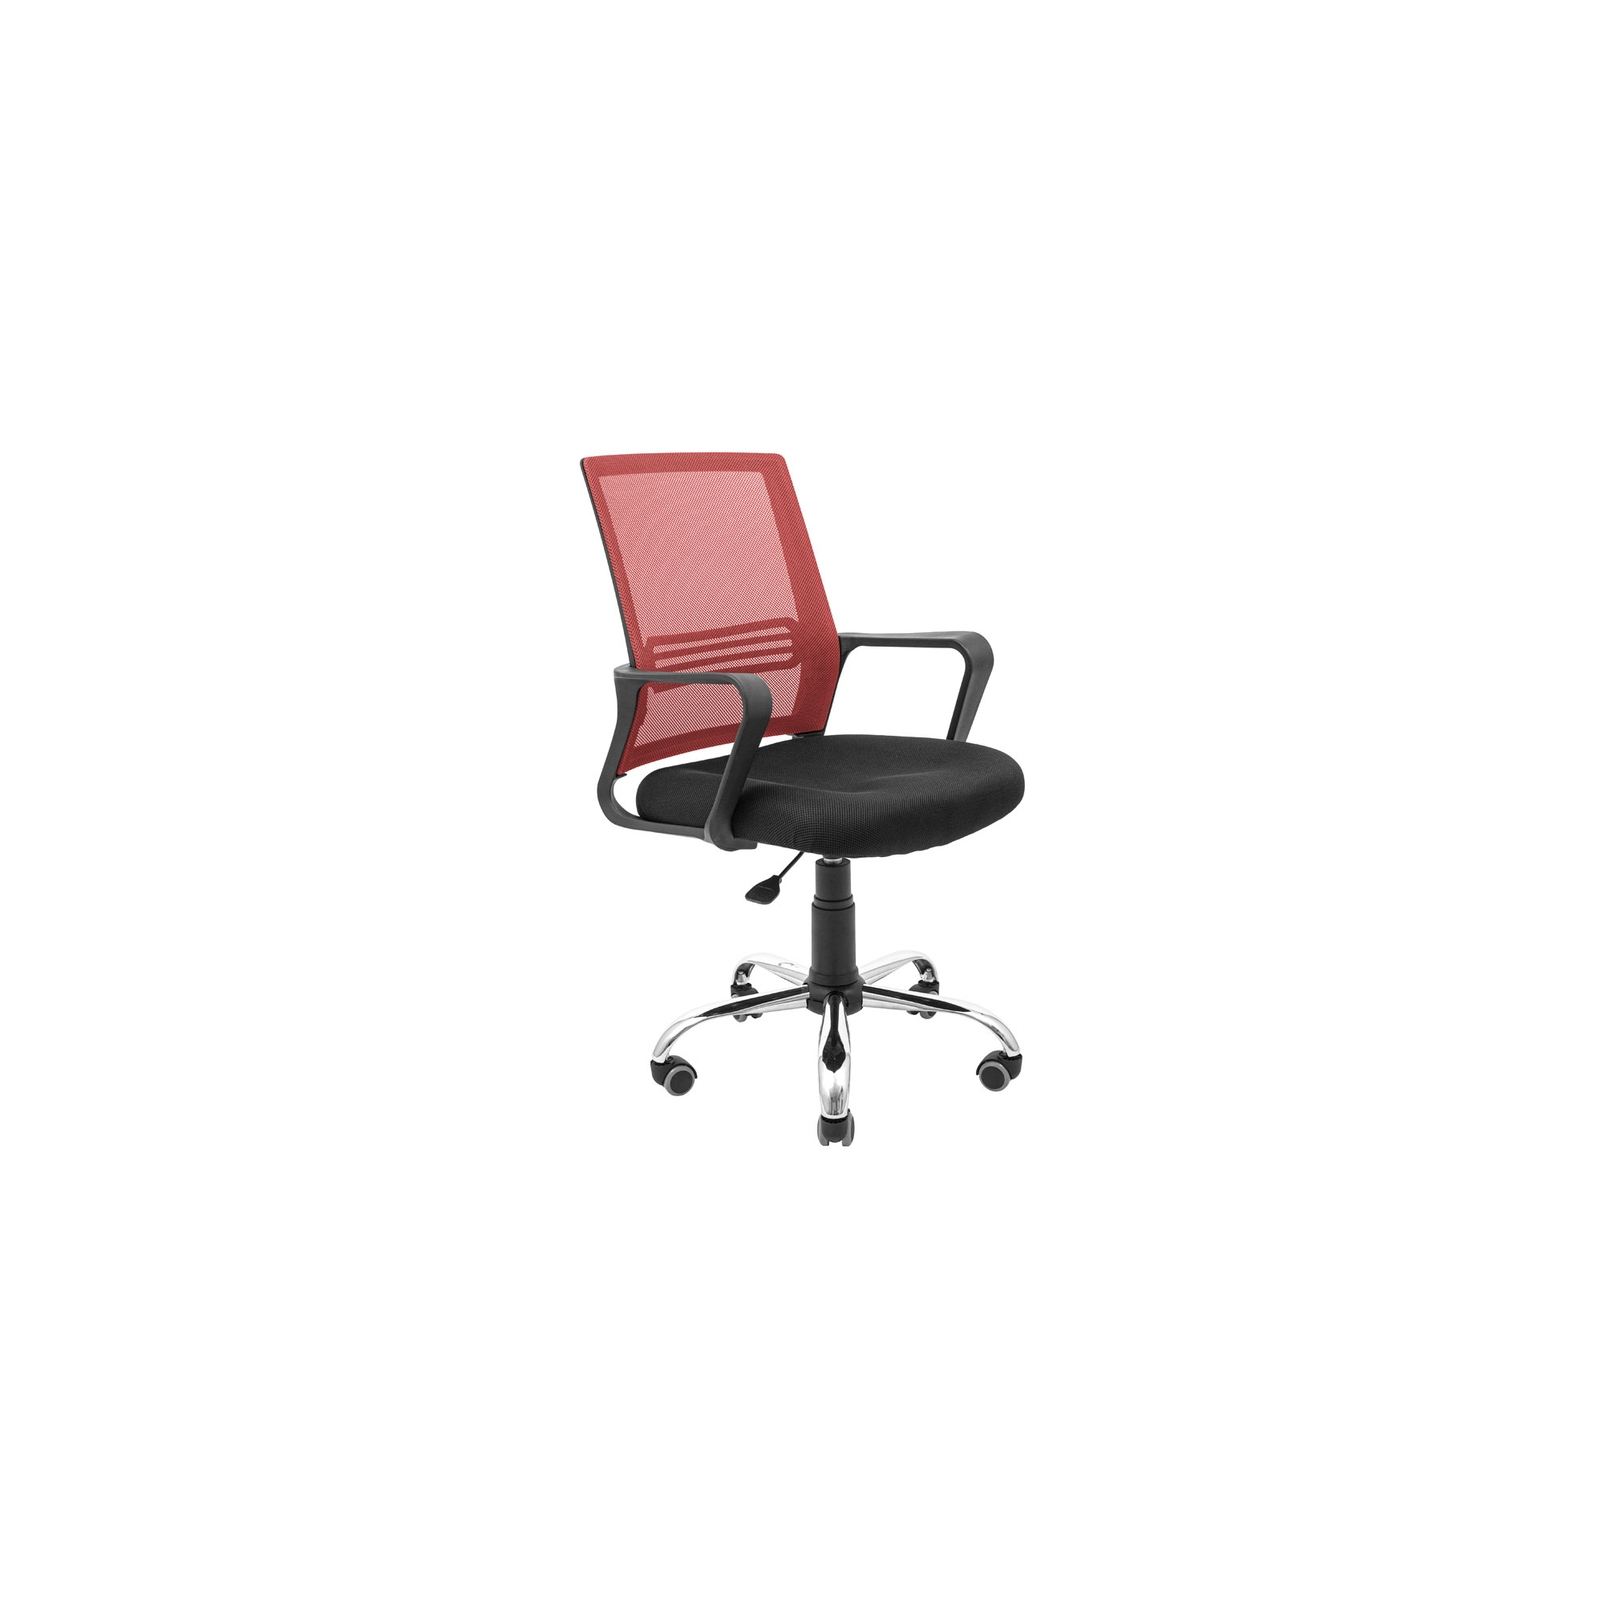 Офисное кресло Richman Джина Хром Пиастра Сетка черная+зеленая (ADD0003093)